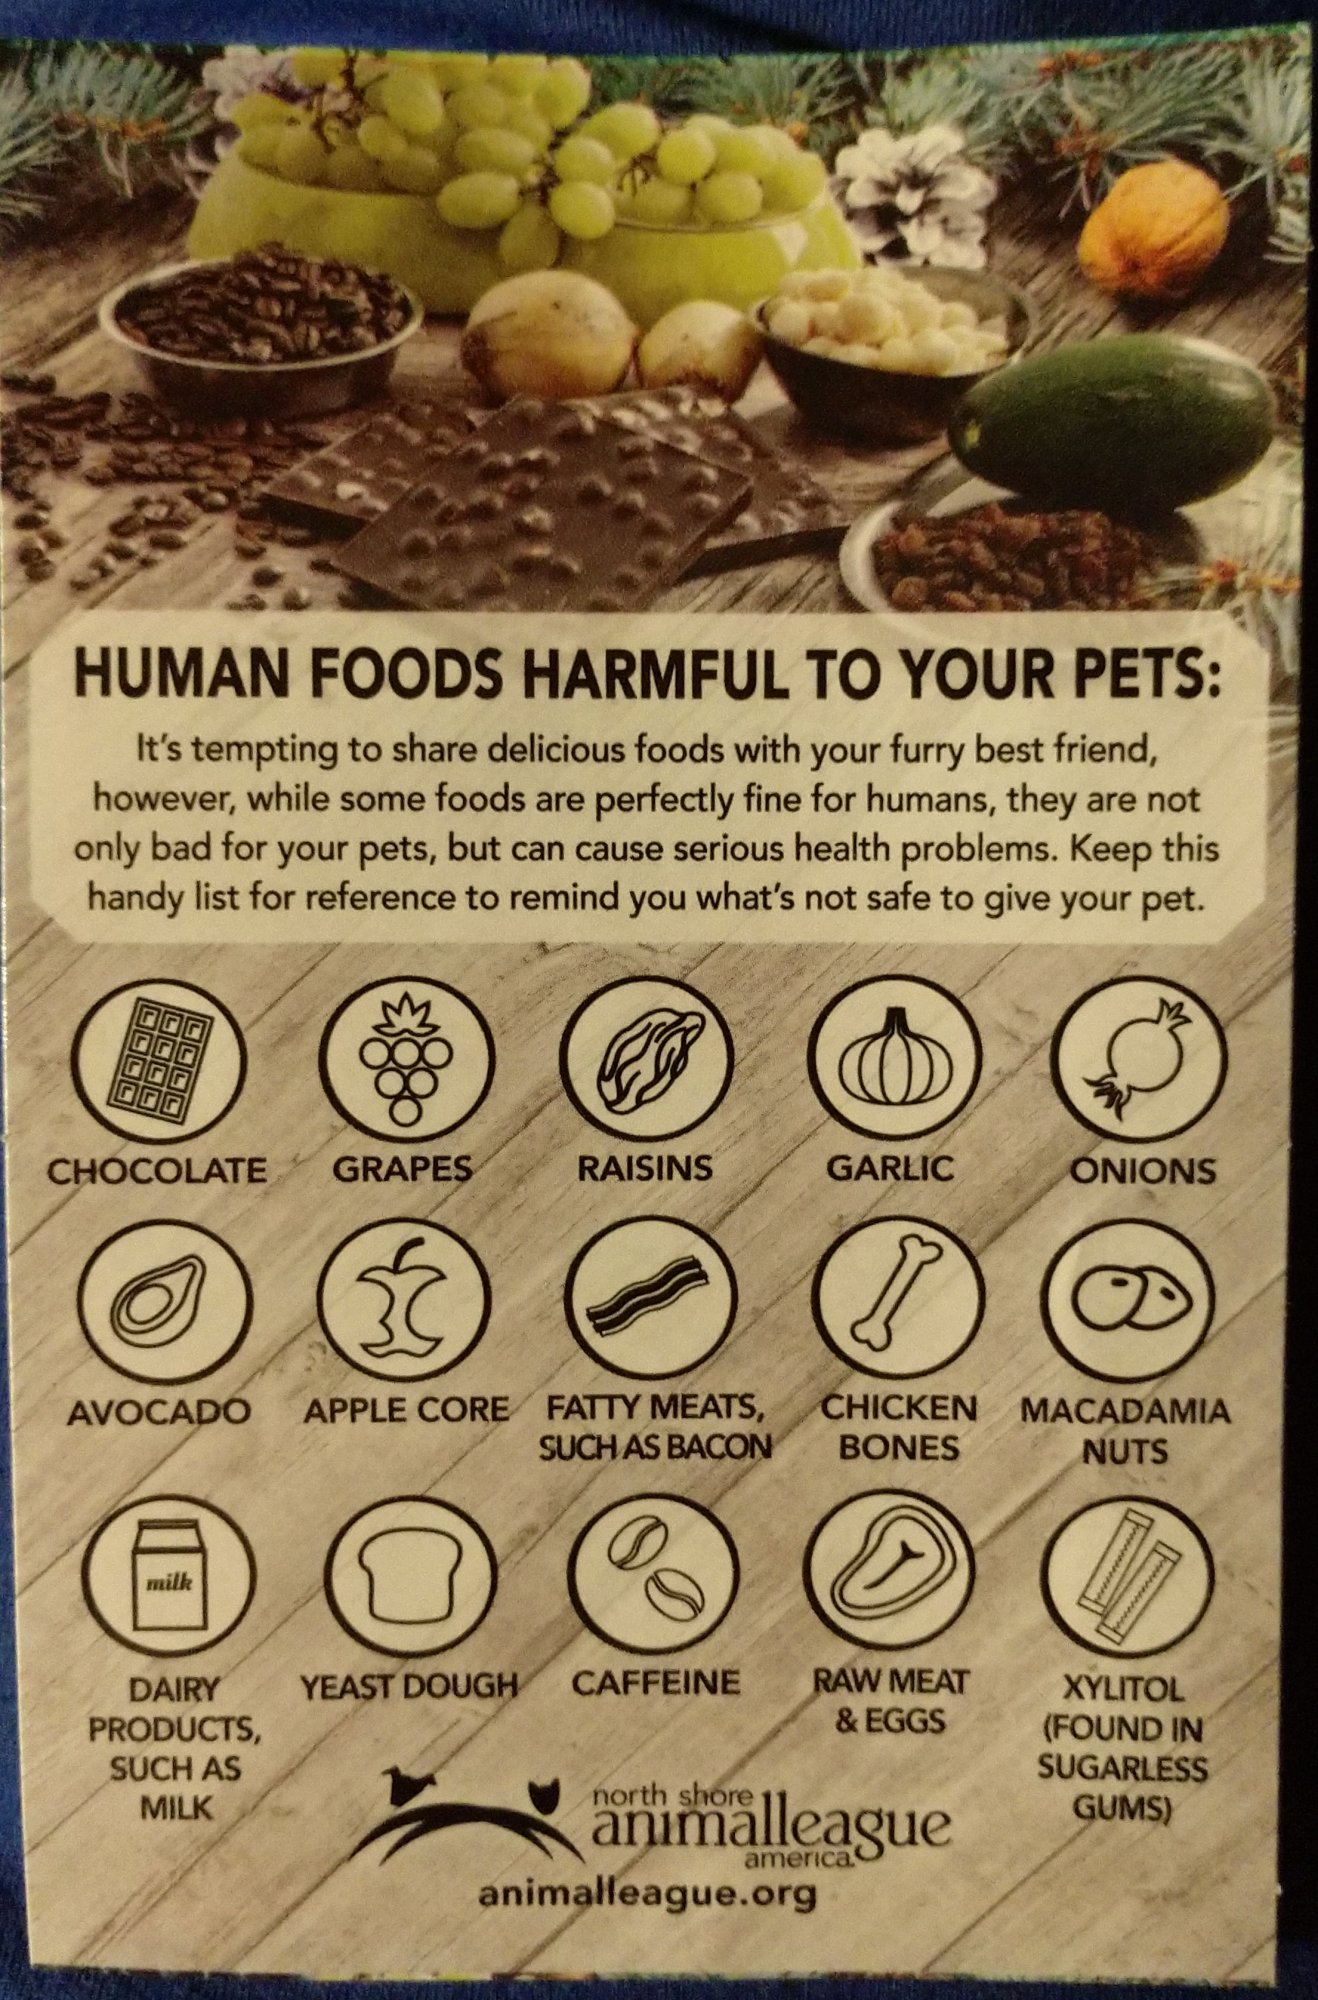 pets_harmful_food_022820.jpg